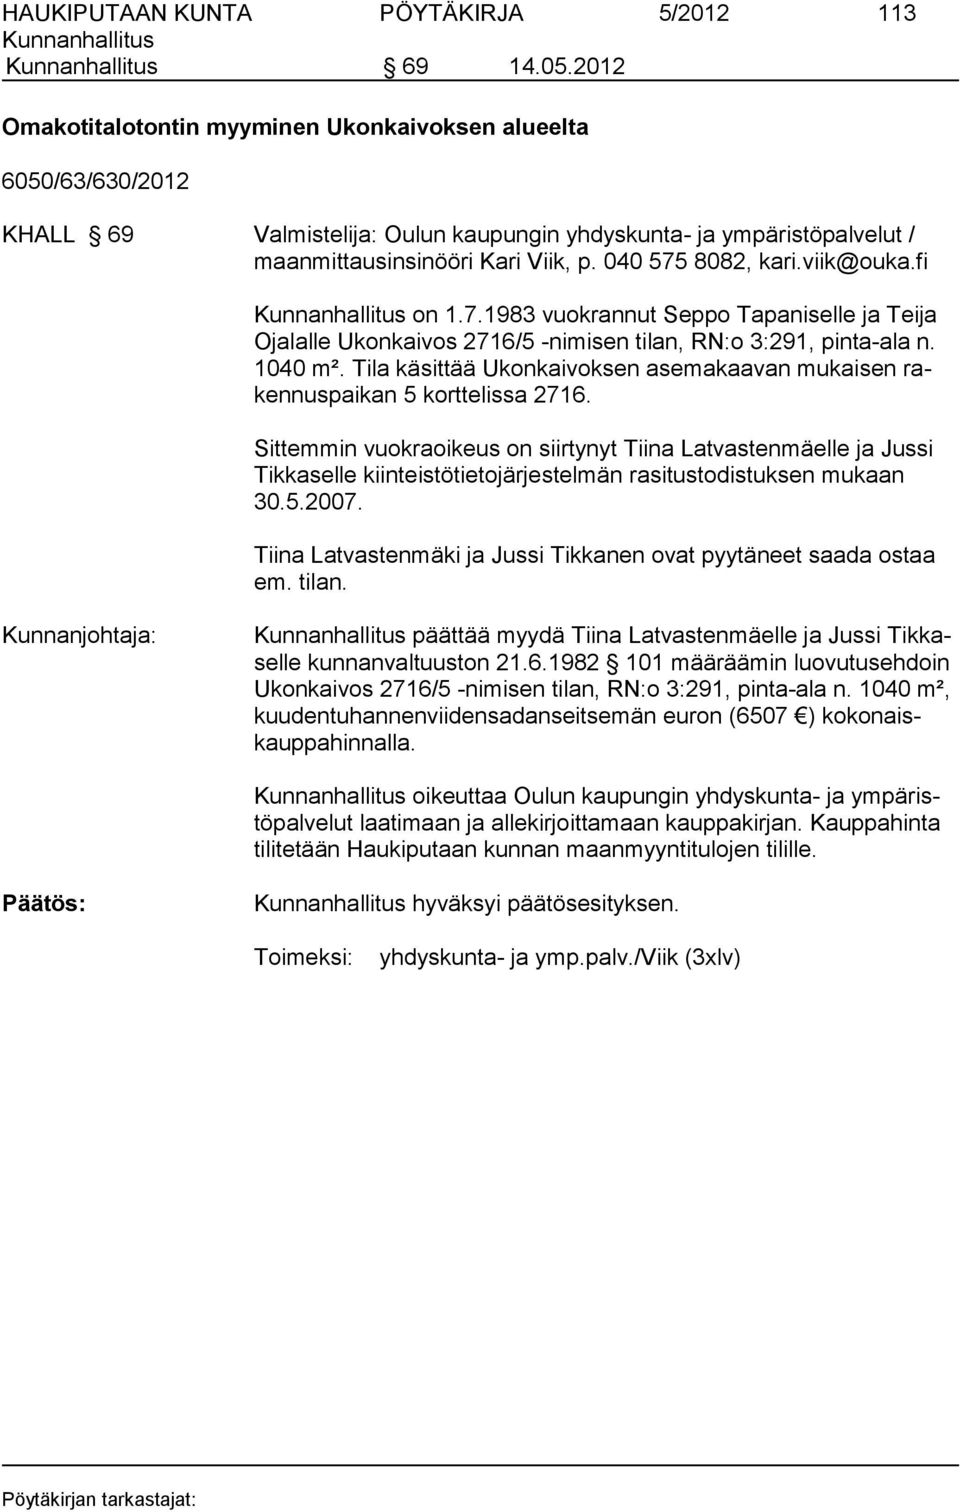 viik@ouka.fi on 1.7.1983 vuokrannut Seppo Tapaniselle ja Teija Ojalalle Ukonkaivos 2716/5 -nimisen tilan, RN:o 3:291, pinta-ala n. 1040 m².